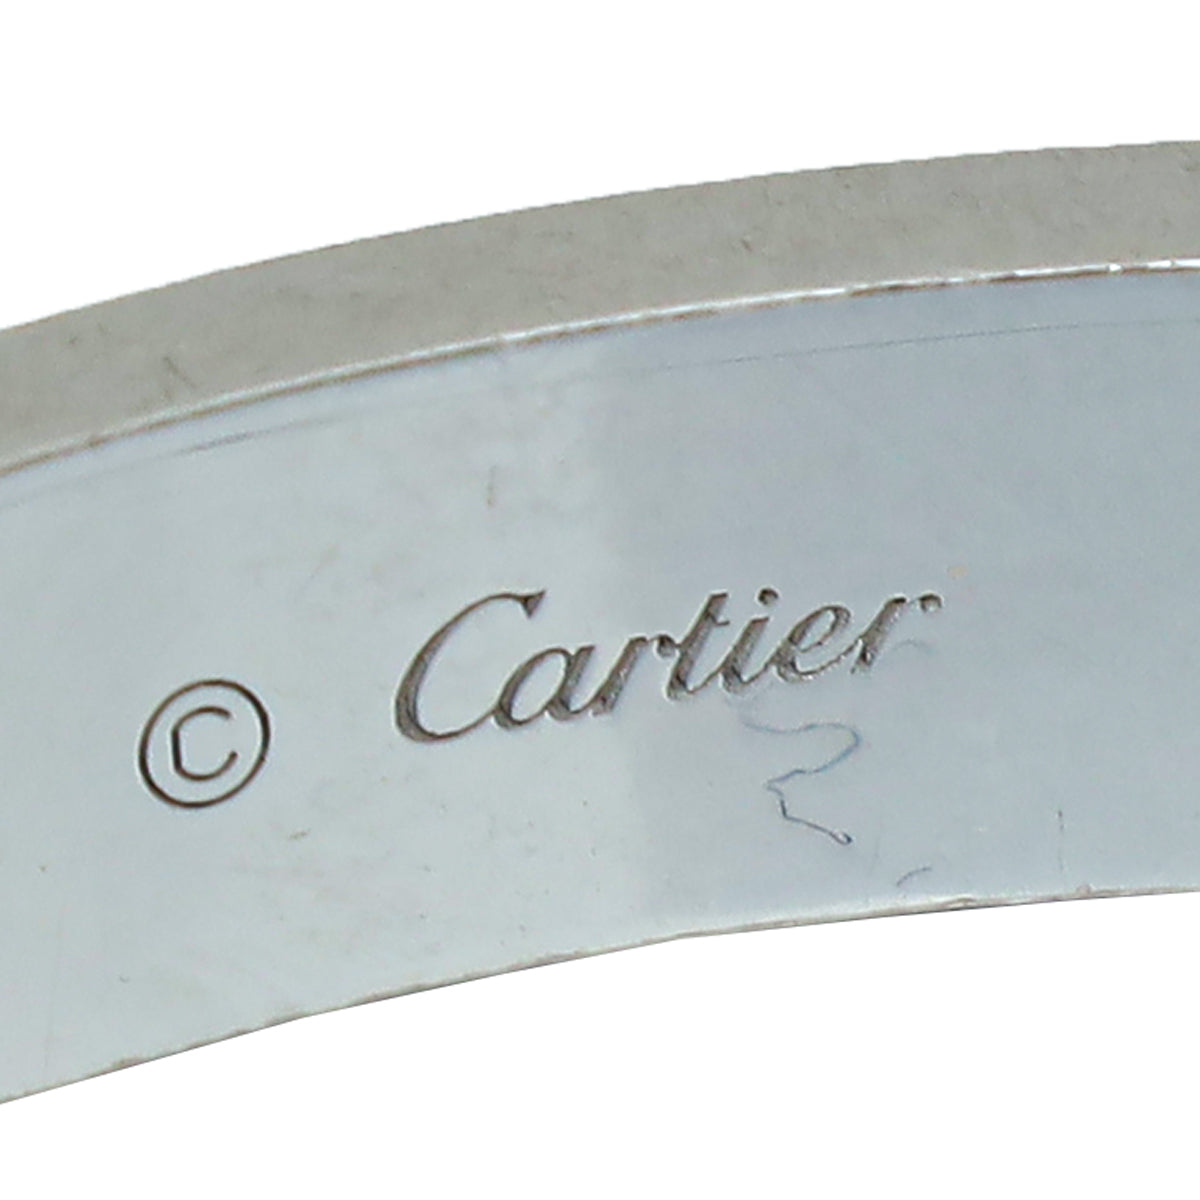 Cartier 18K White Gold 4 Diamond Love Bracelet 16